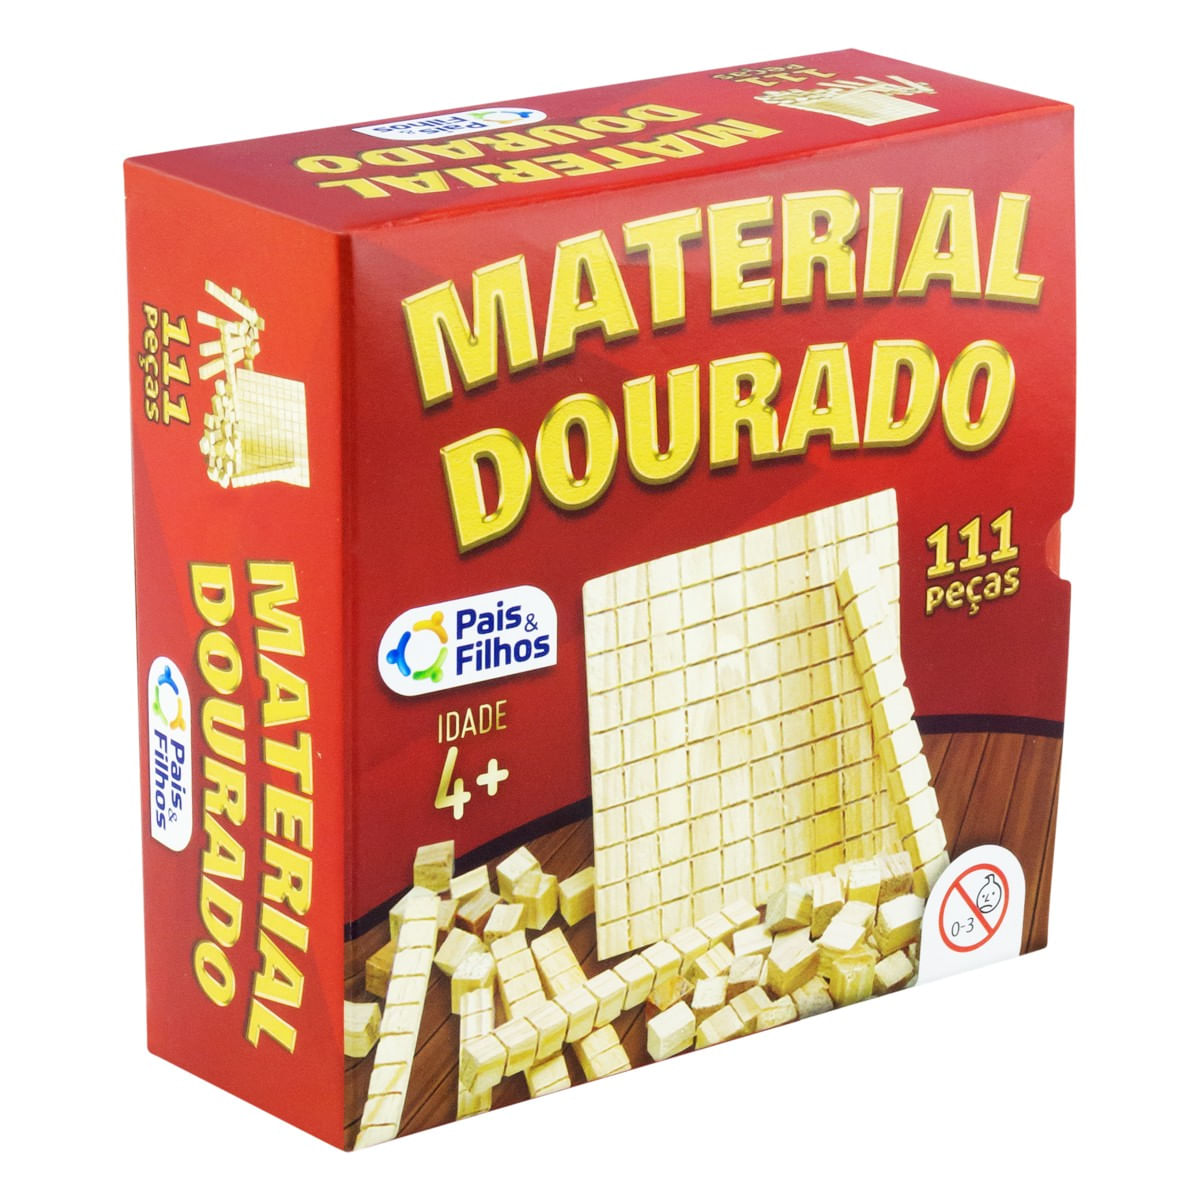 Jogo Didático De Madeira Material Dourado 111 Peças - Vou Comprar